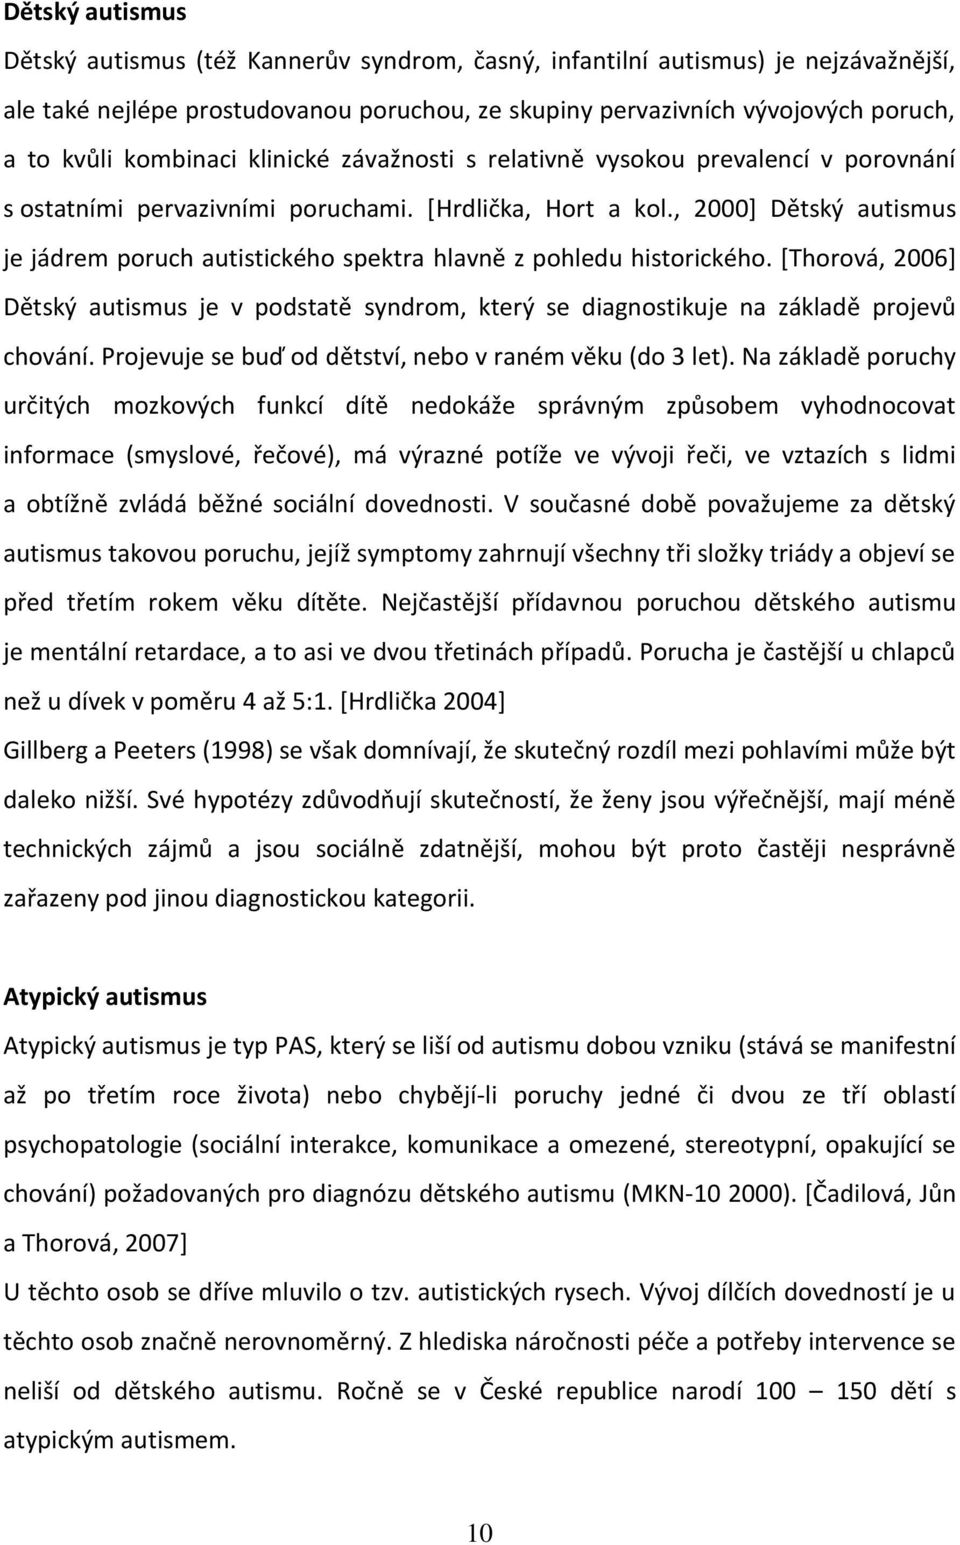 , 2000] Dětský autismus je jádrem poruch autistického spektra hlavně z pohledu historického. [Thorová, 2006] Dětský autismus je v podstatě syndrom, který se diagnostikuje na základě projevů chování.